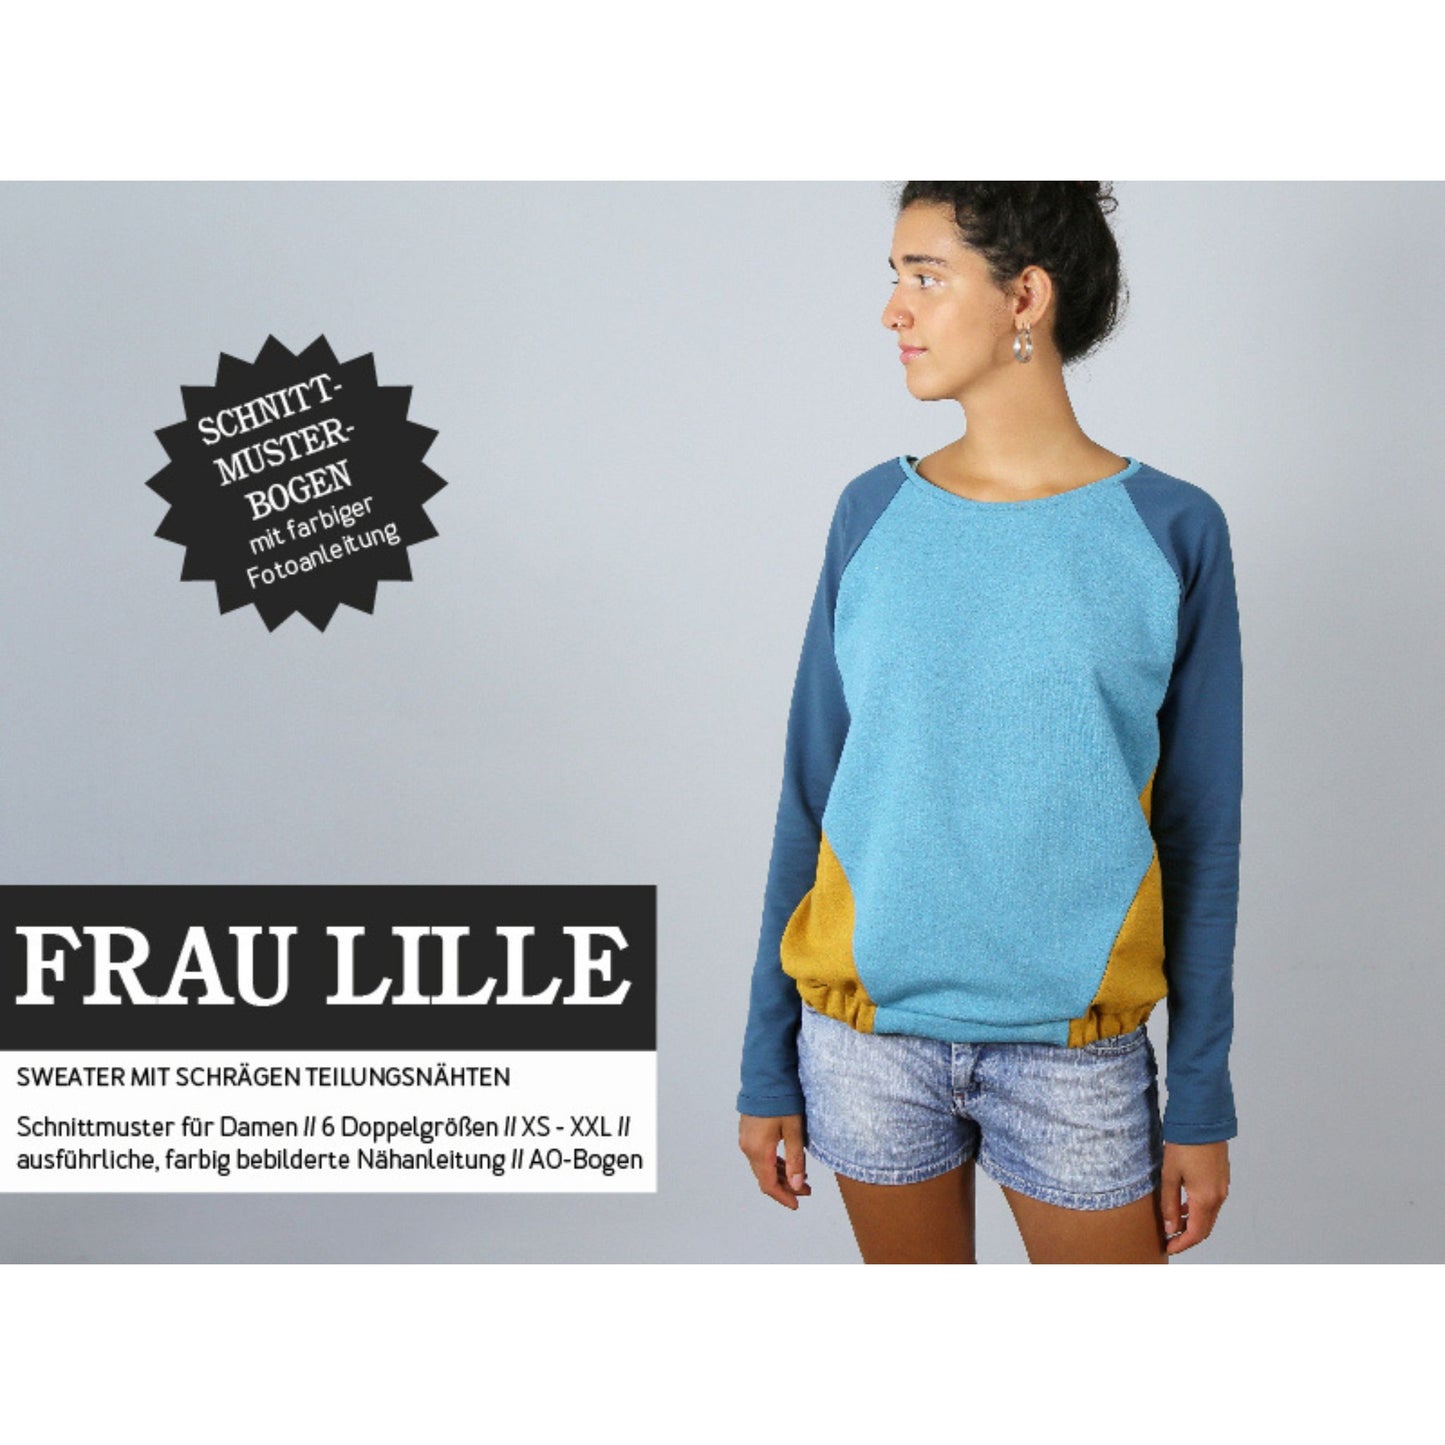 Studio Schnittreif Sweater Frau Lille